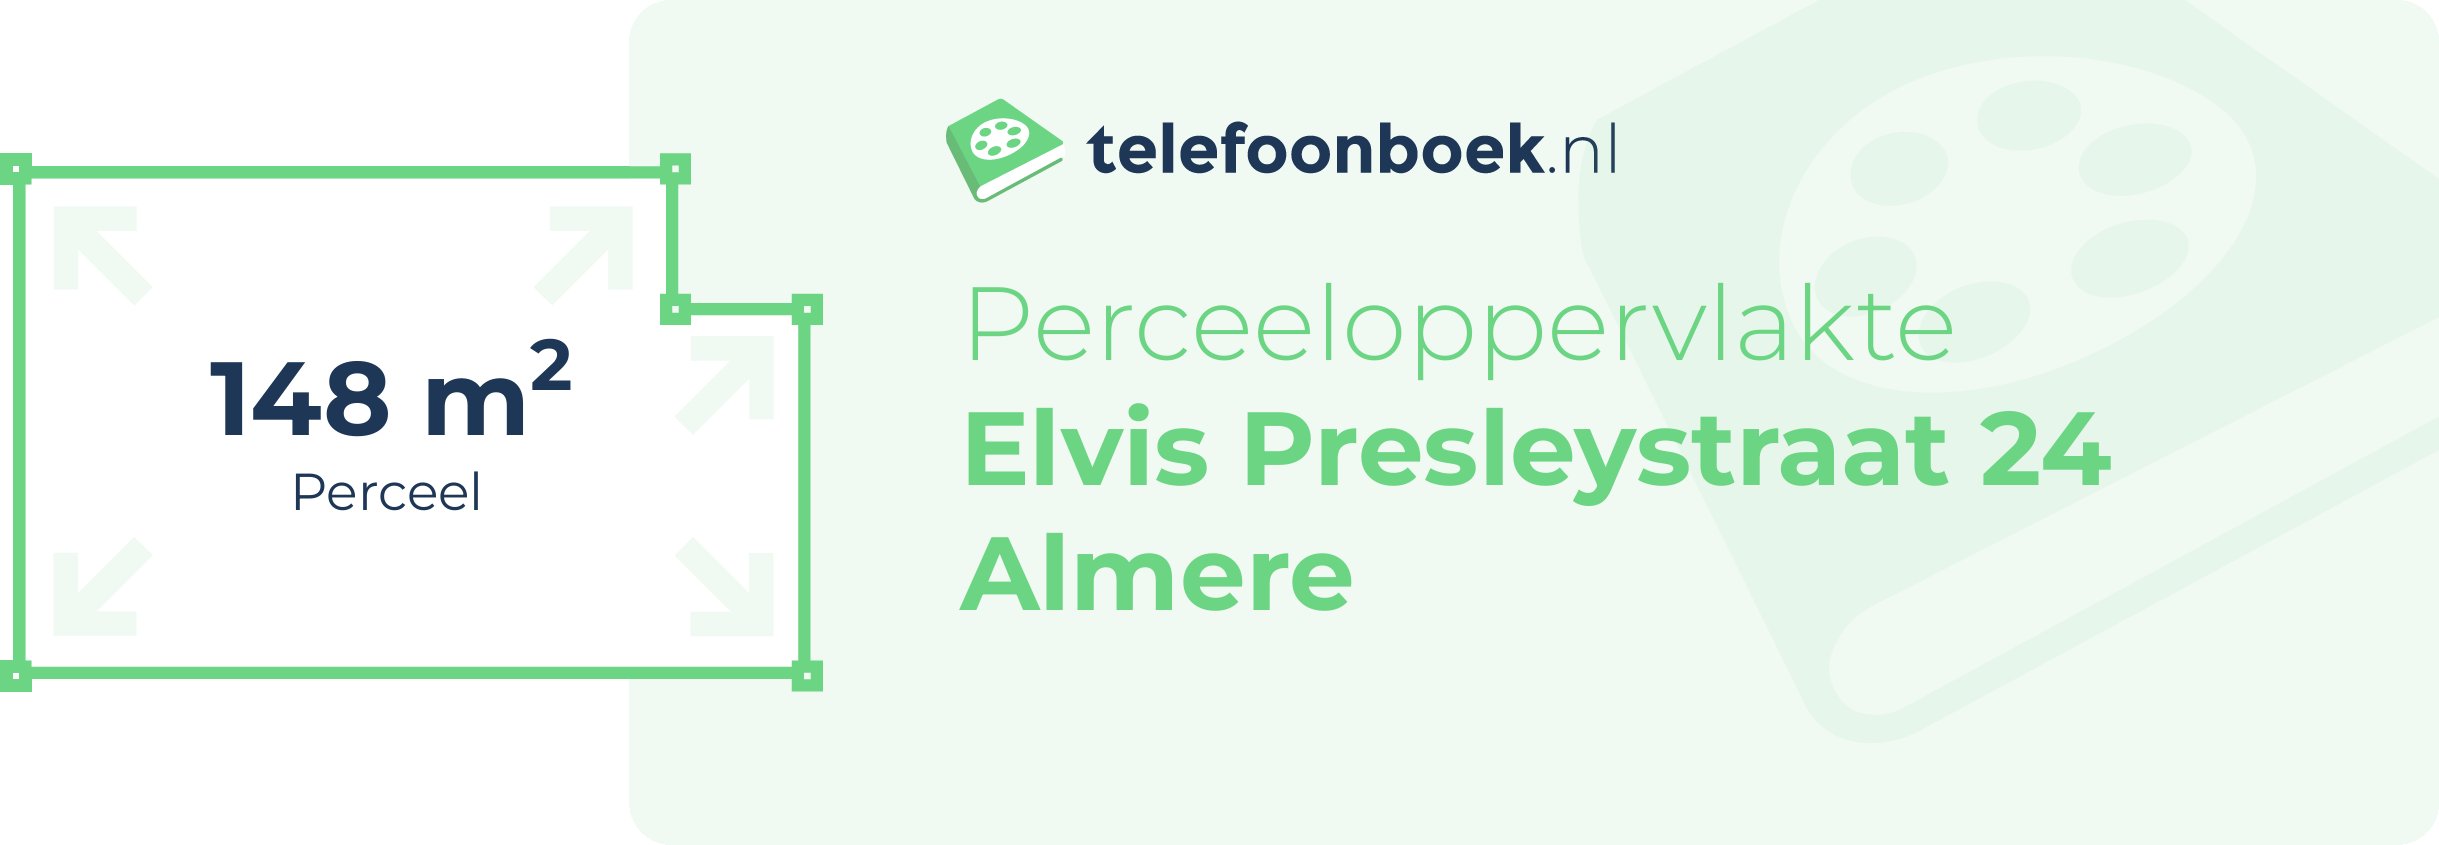 Perceeloppervlakte Elvis Presleystraat 24 Almere